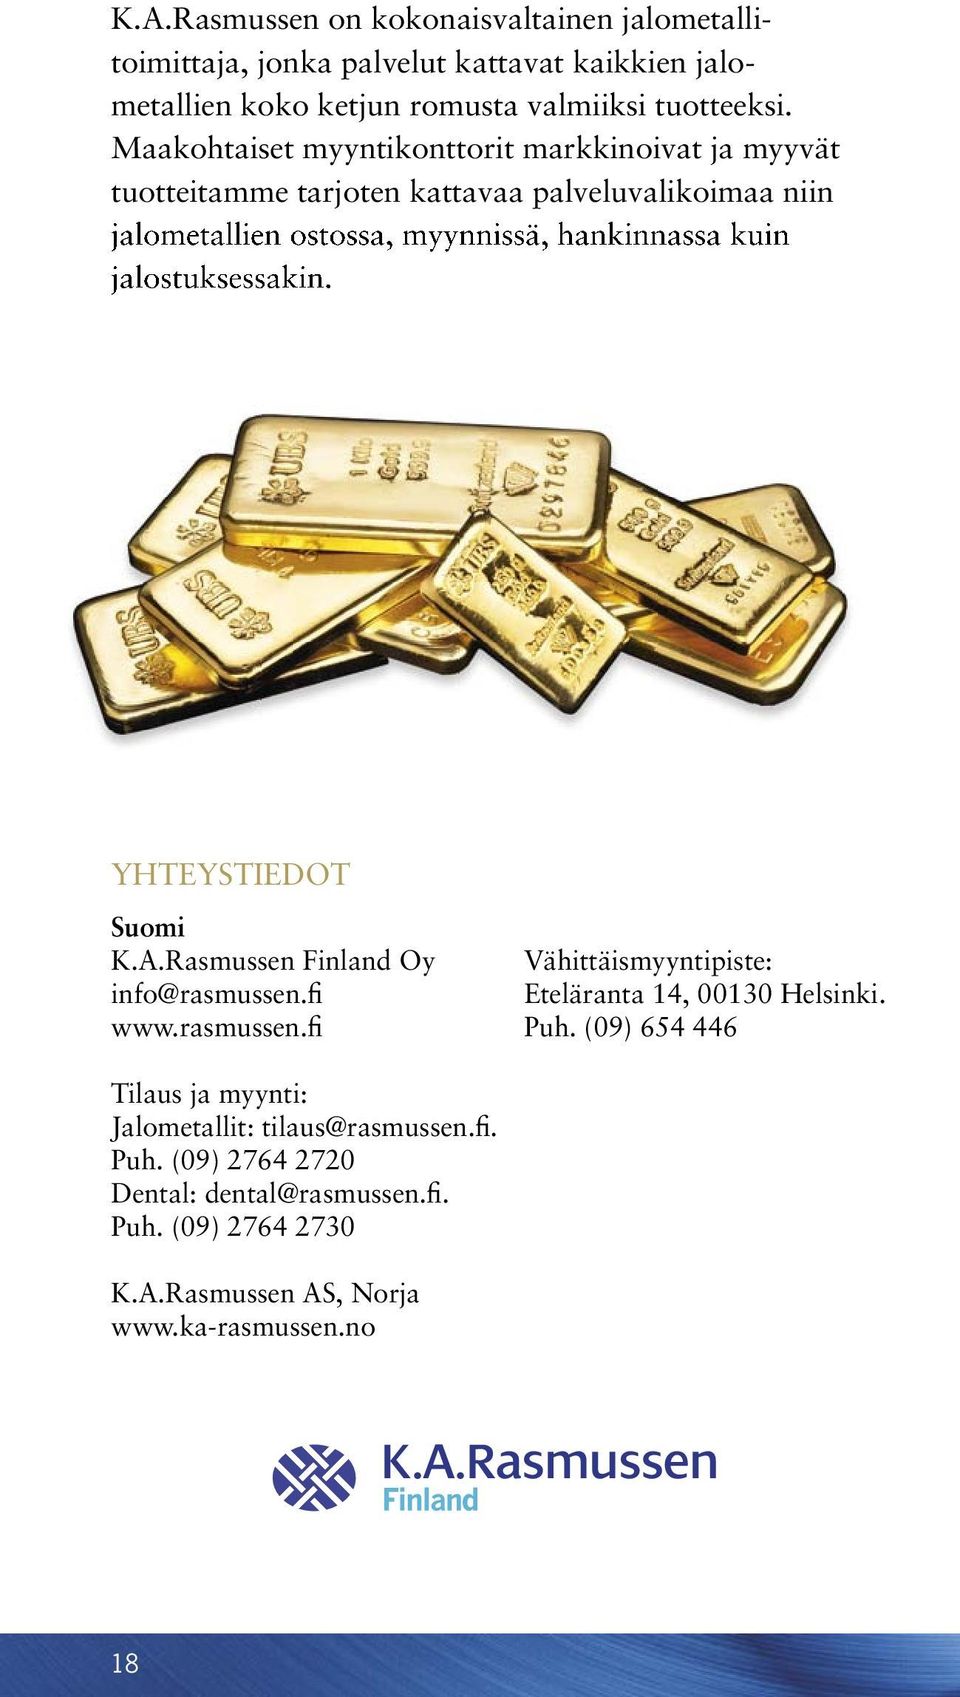 jalostuksessakin. YHTEYSTIEDOT Suomi K.A.Rasmussen Finland Oy info@rasmussen.fi www.rasmussen.fi Vähittäismyyntipiste: Eteläranta 14, 00130 Helsinki. Puh.